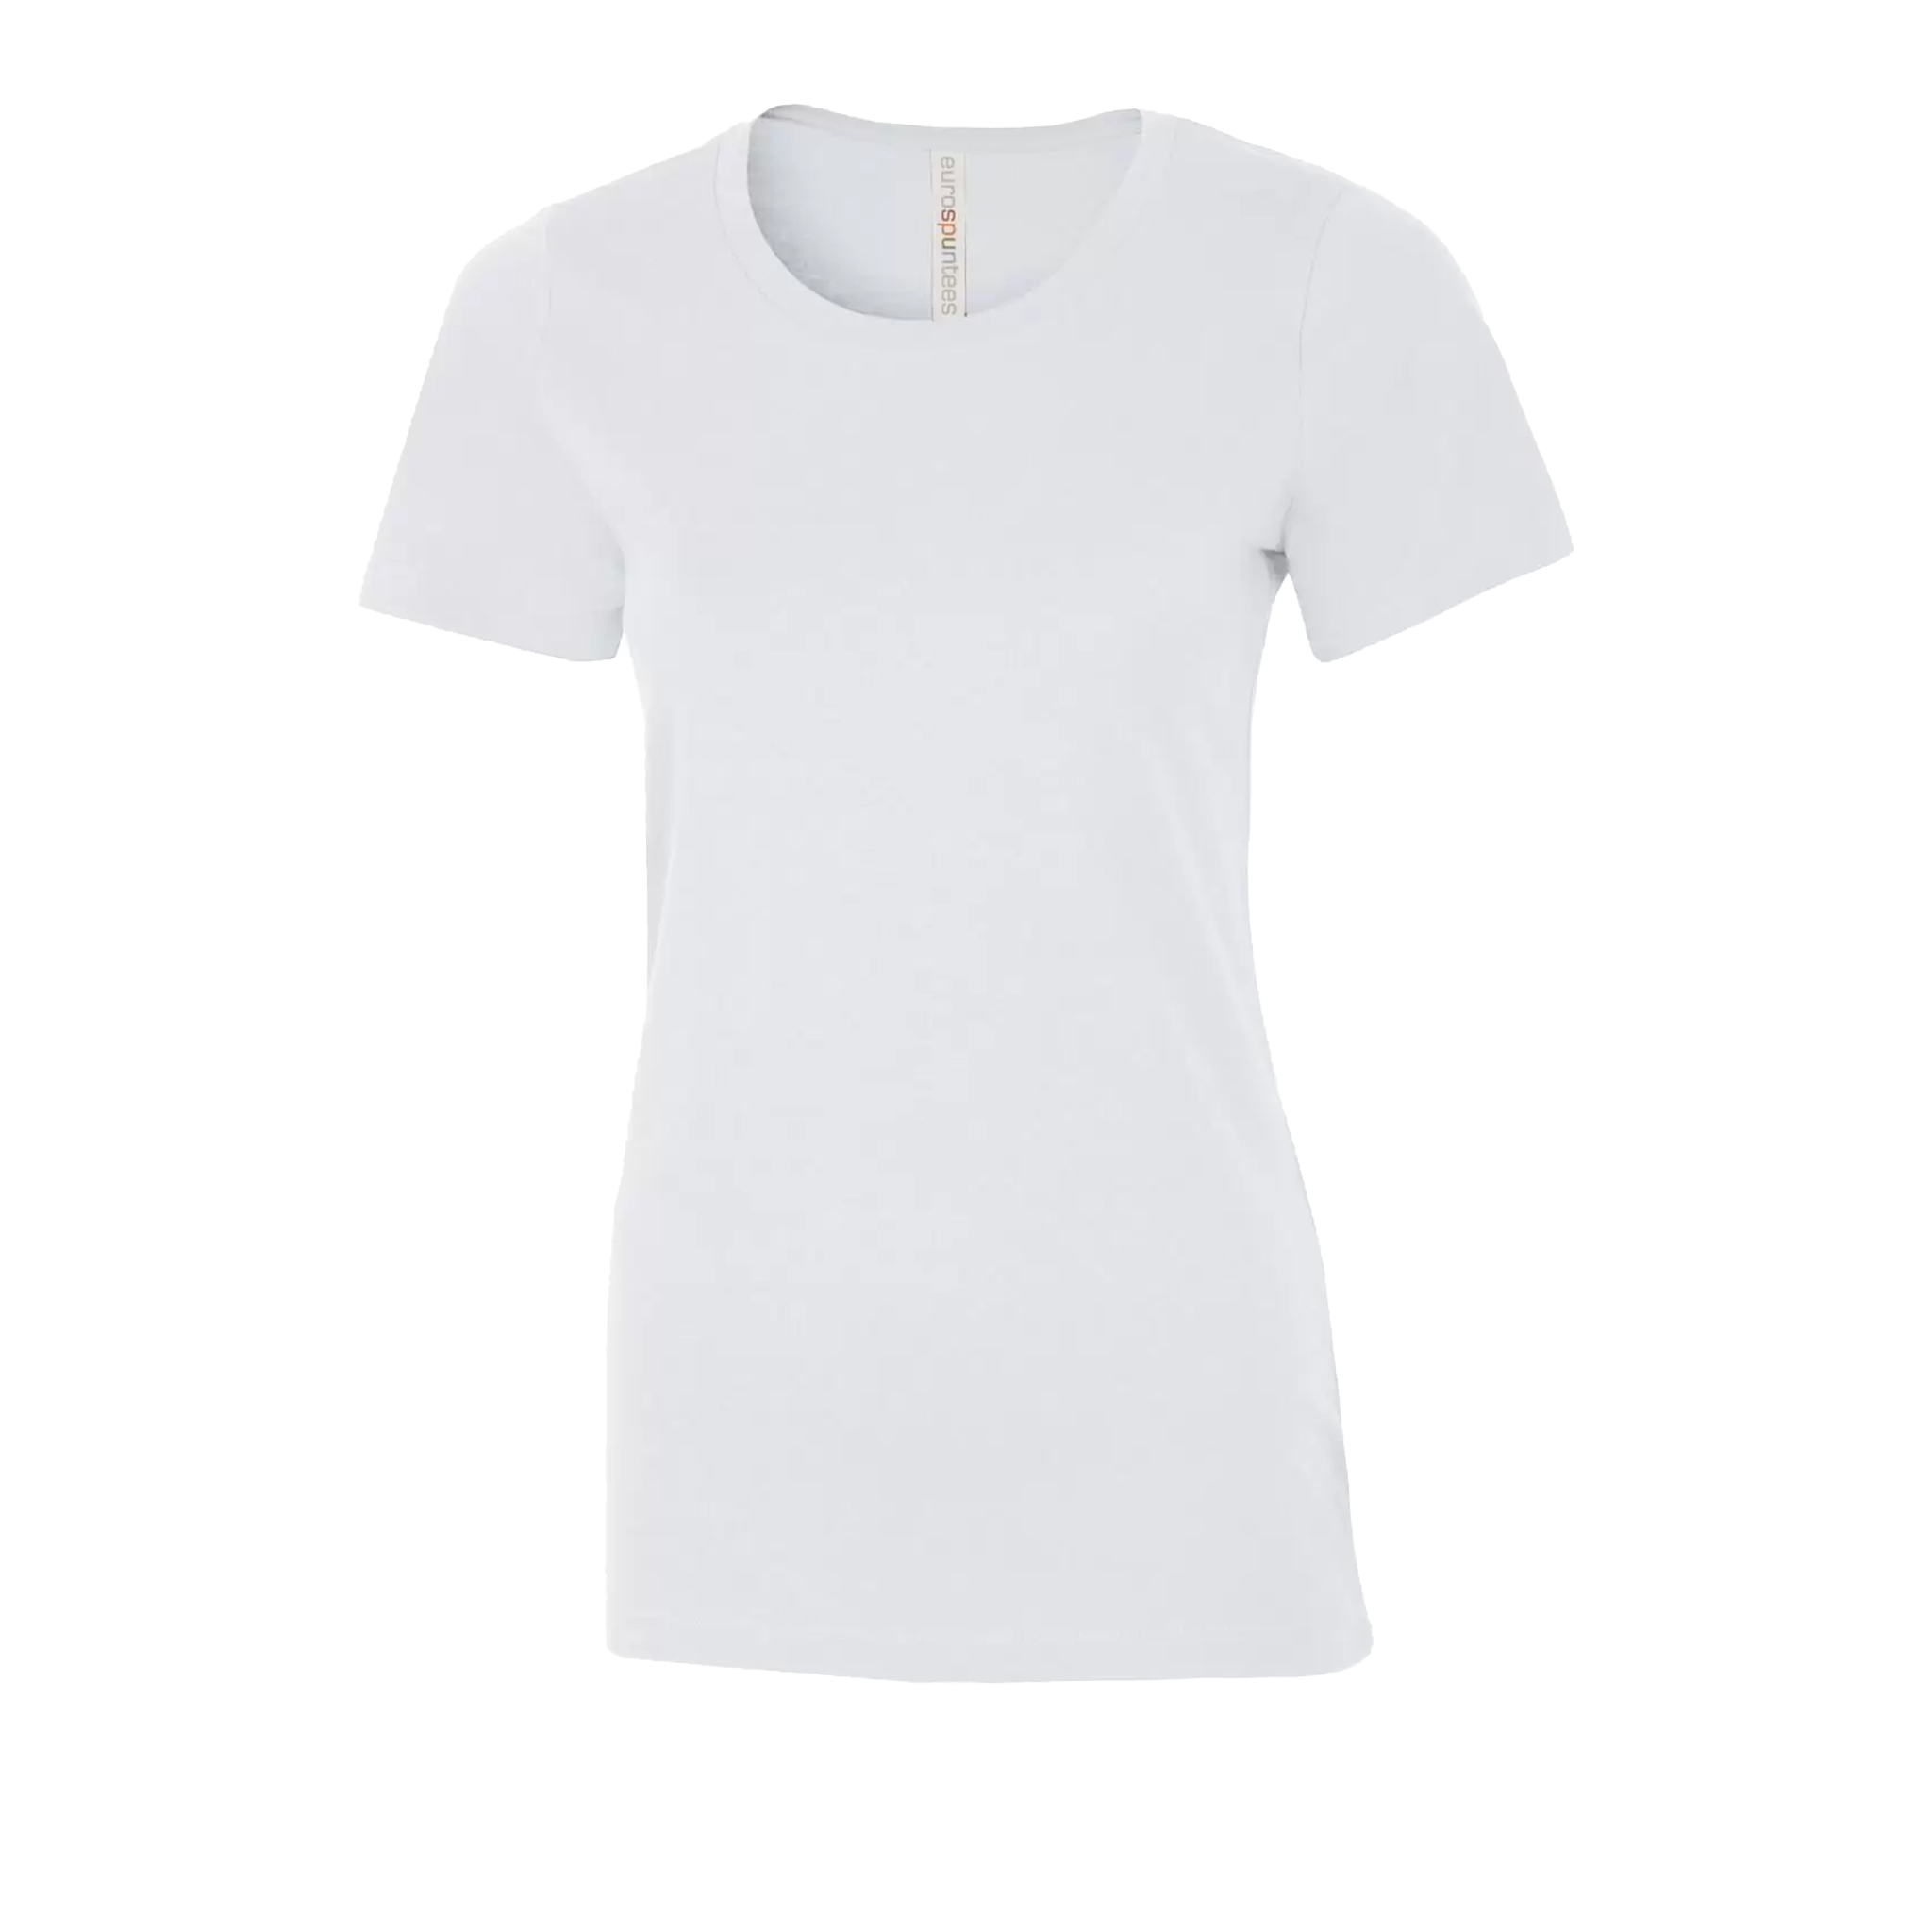 ATC Eurospun Ring Spun T-Shirt - Women's Sizing XS-4XL - White